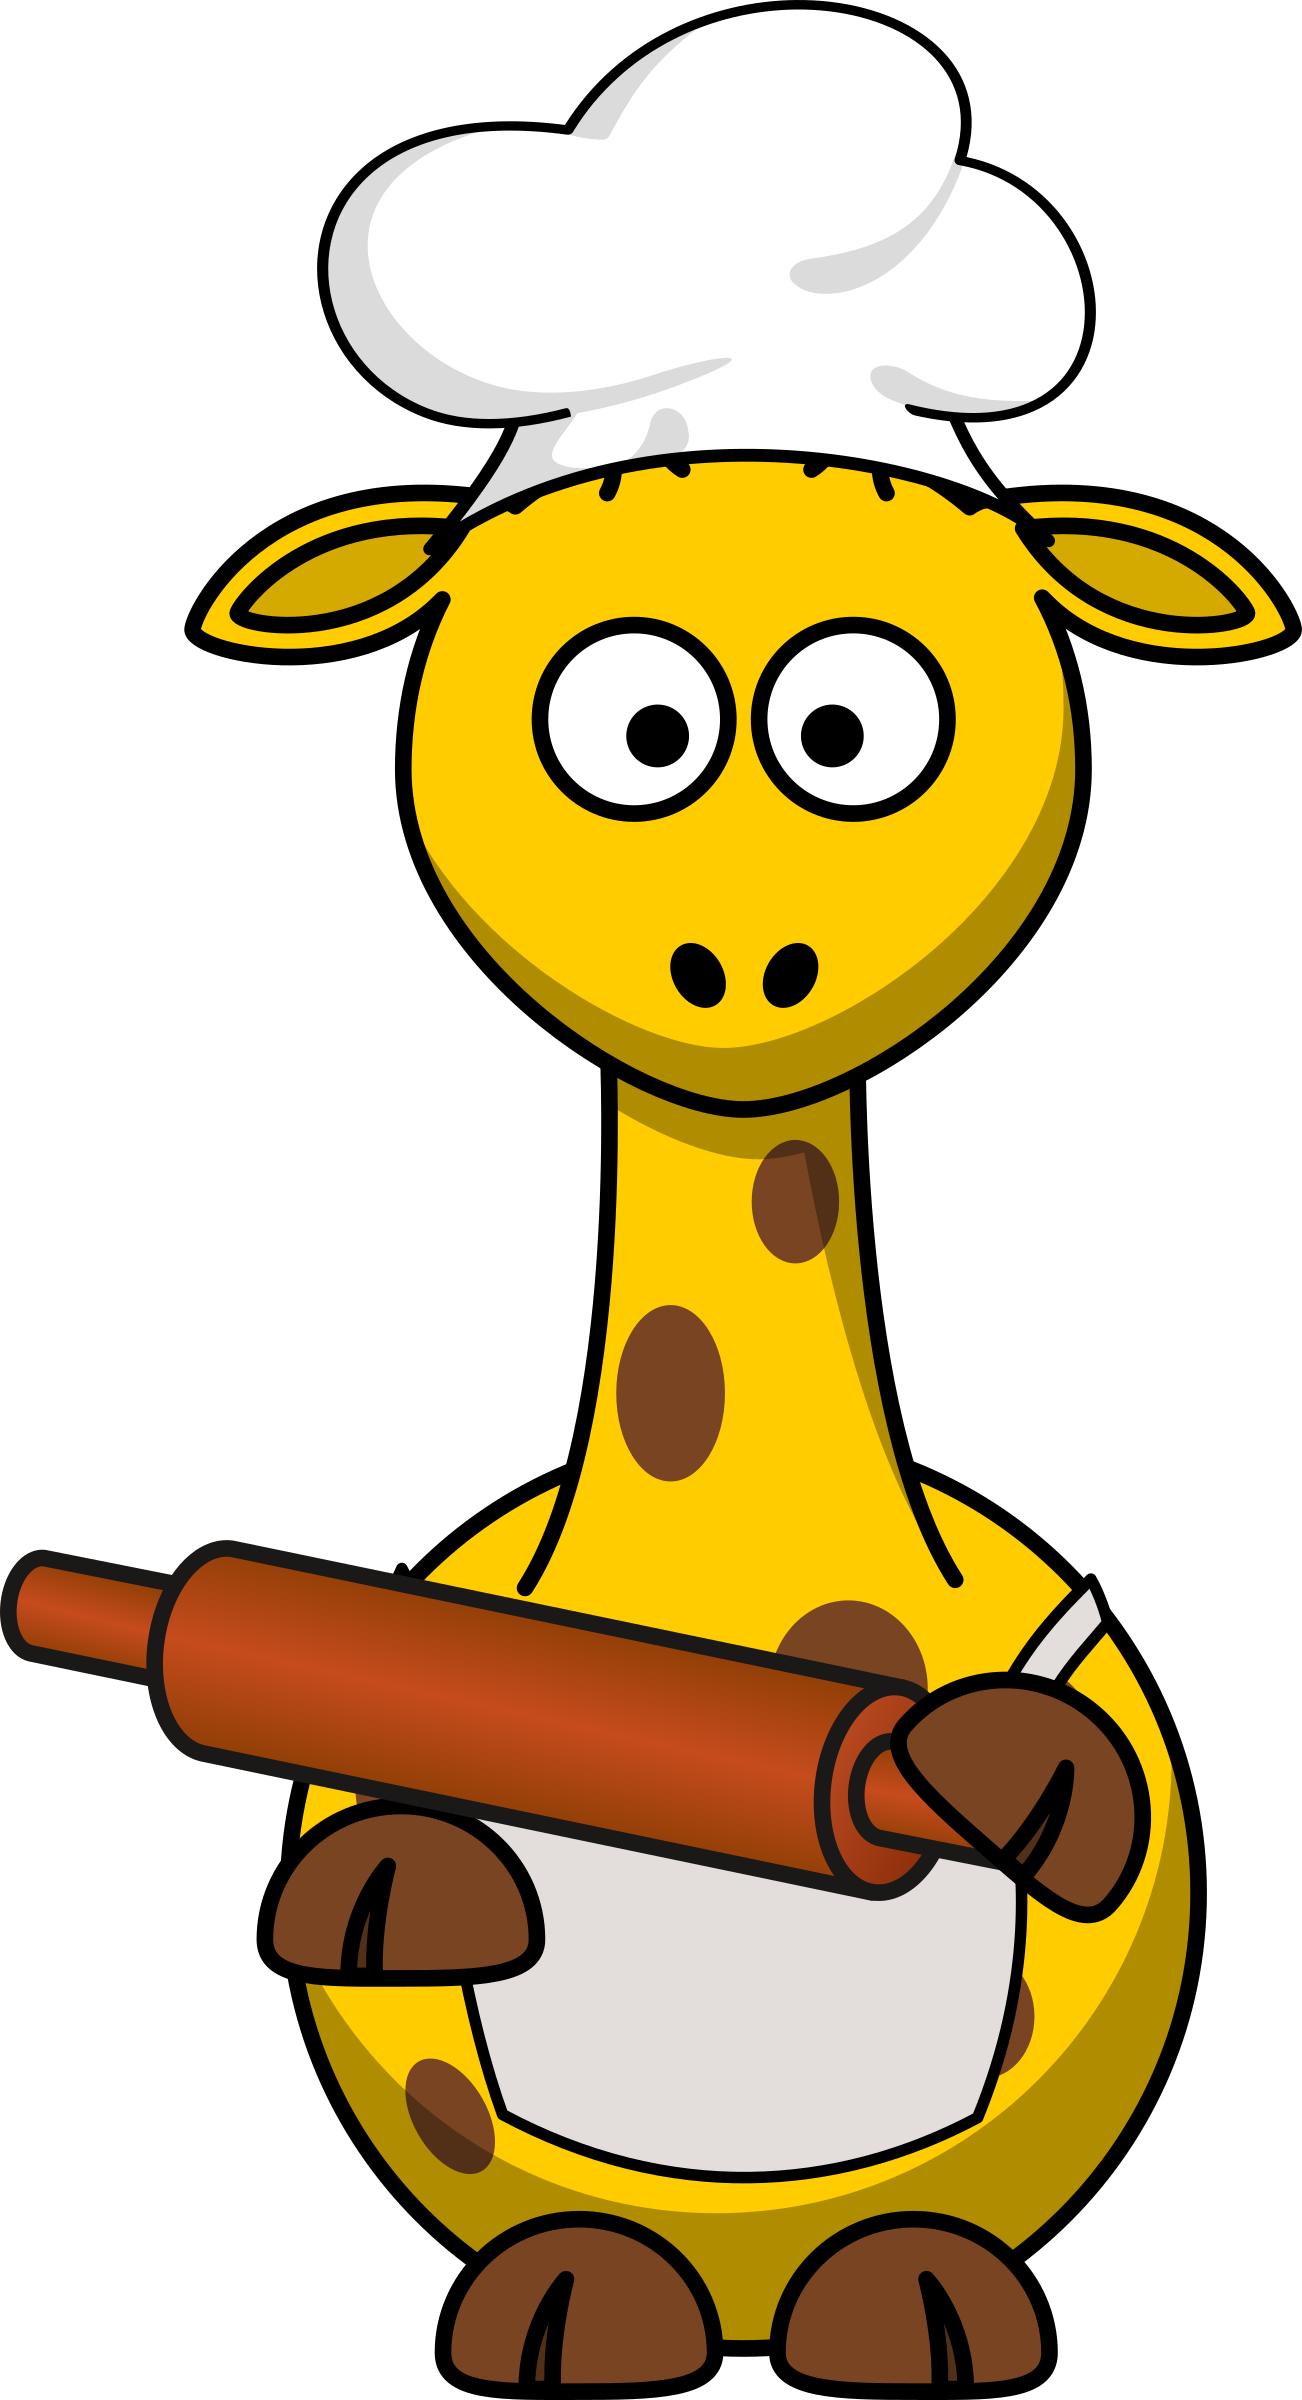 Baker - Cartoon Giraffe (1302x2400)